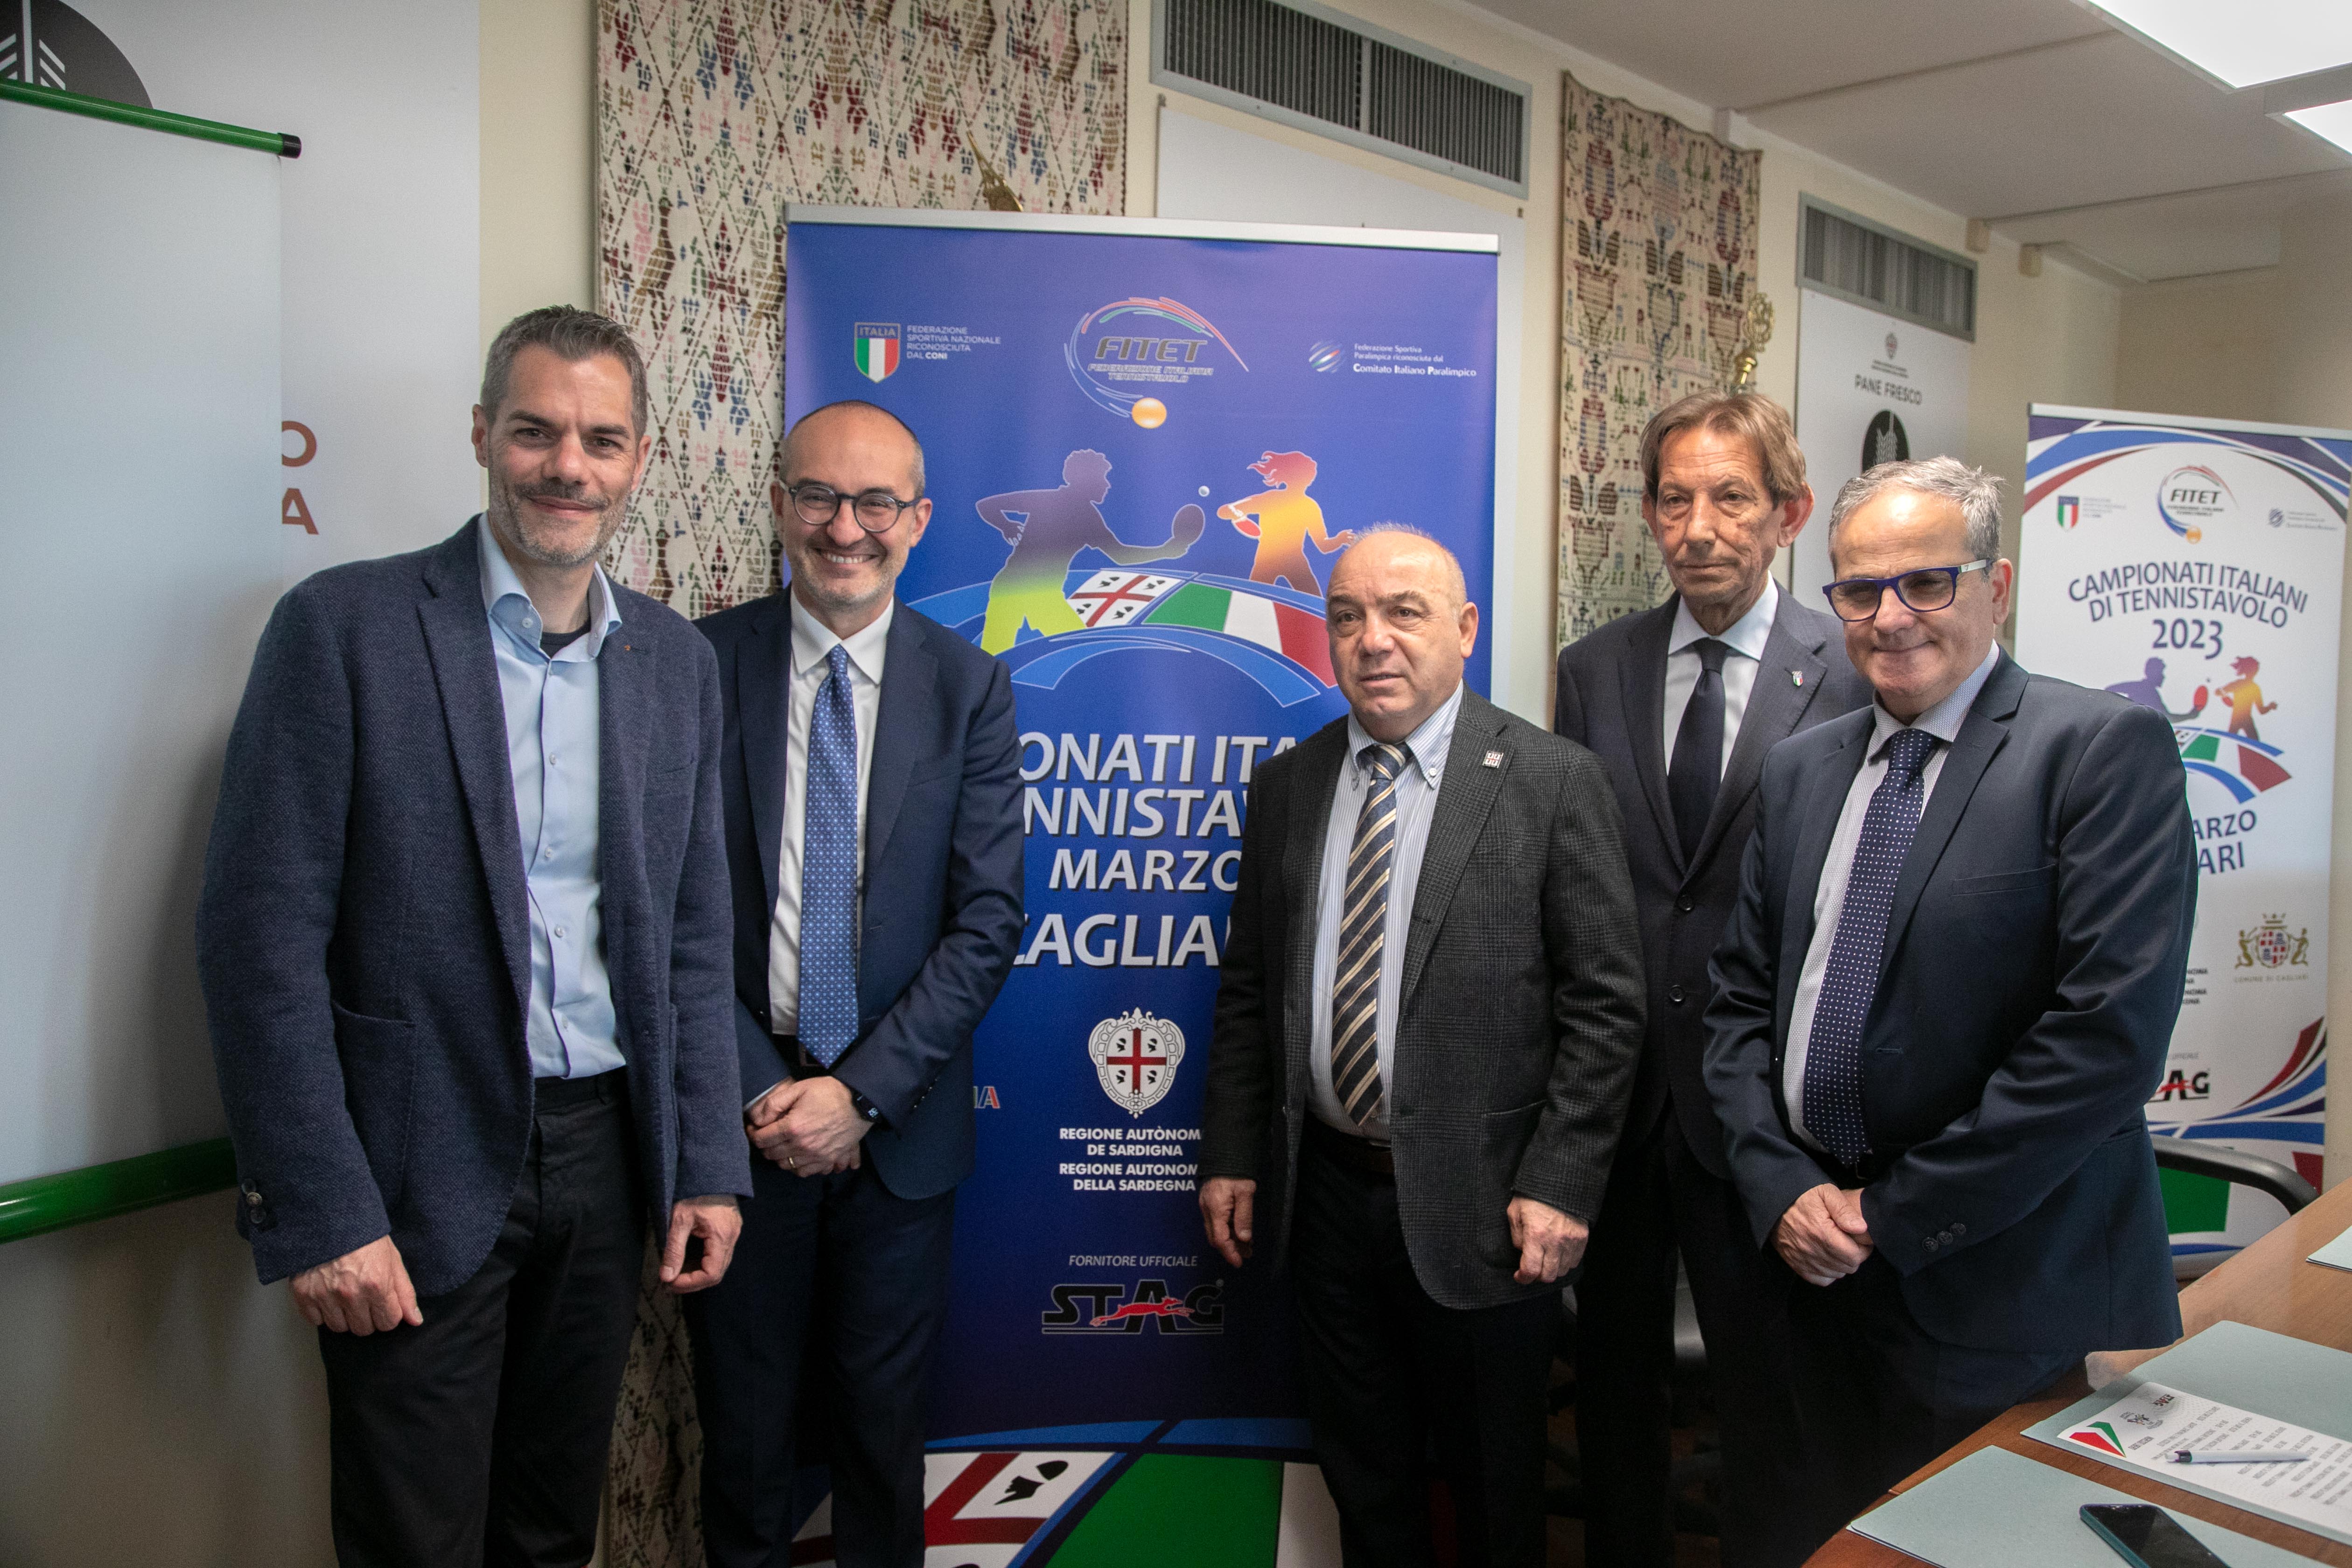 Conferenza stampa Campionati Italiani di Cagliari 2023 relatori